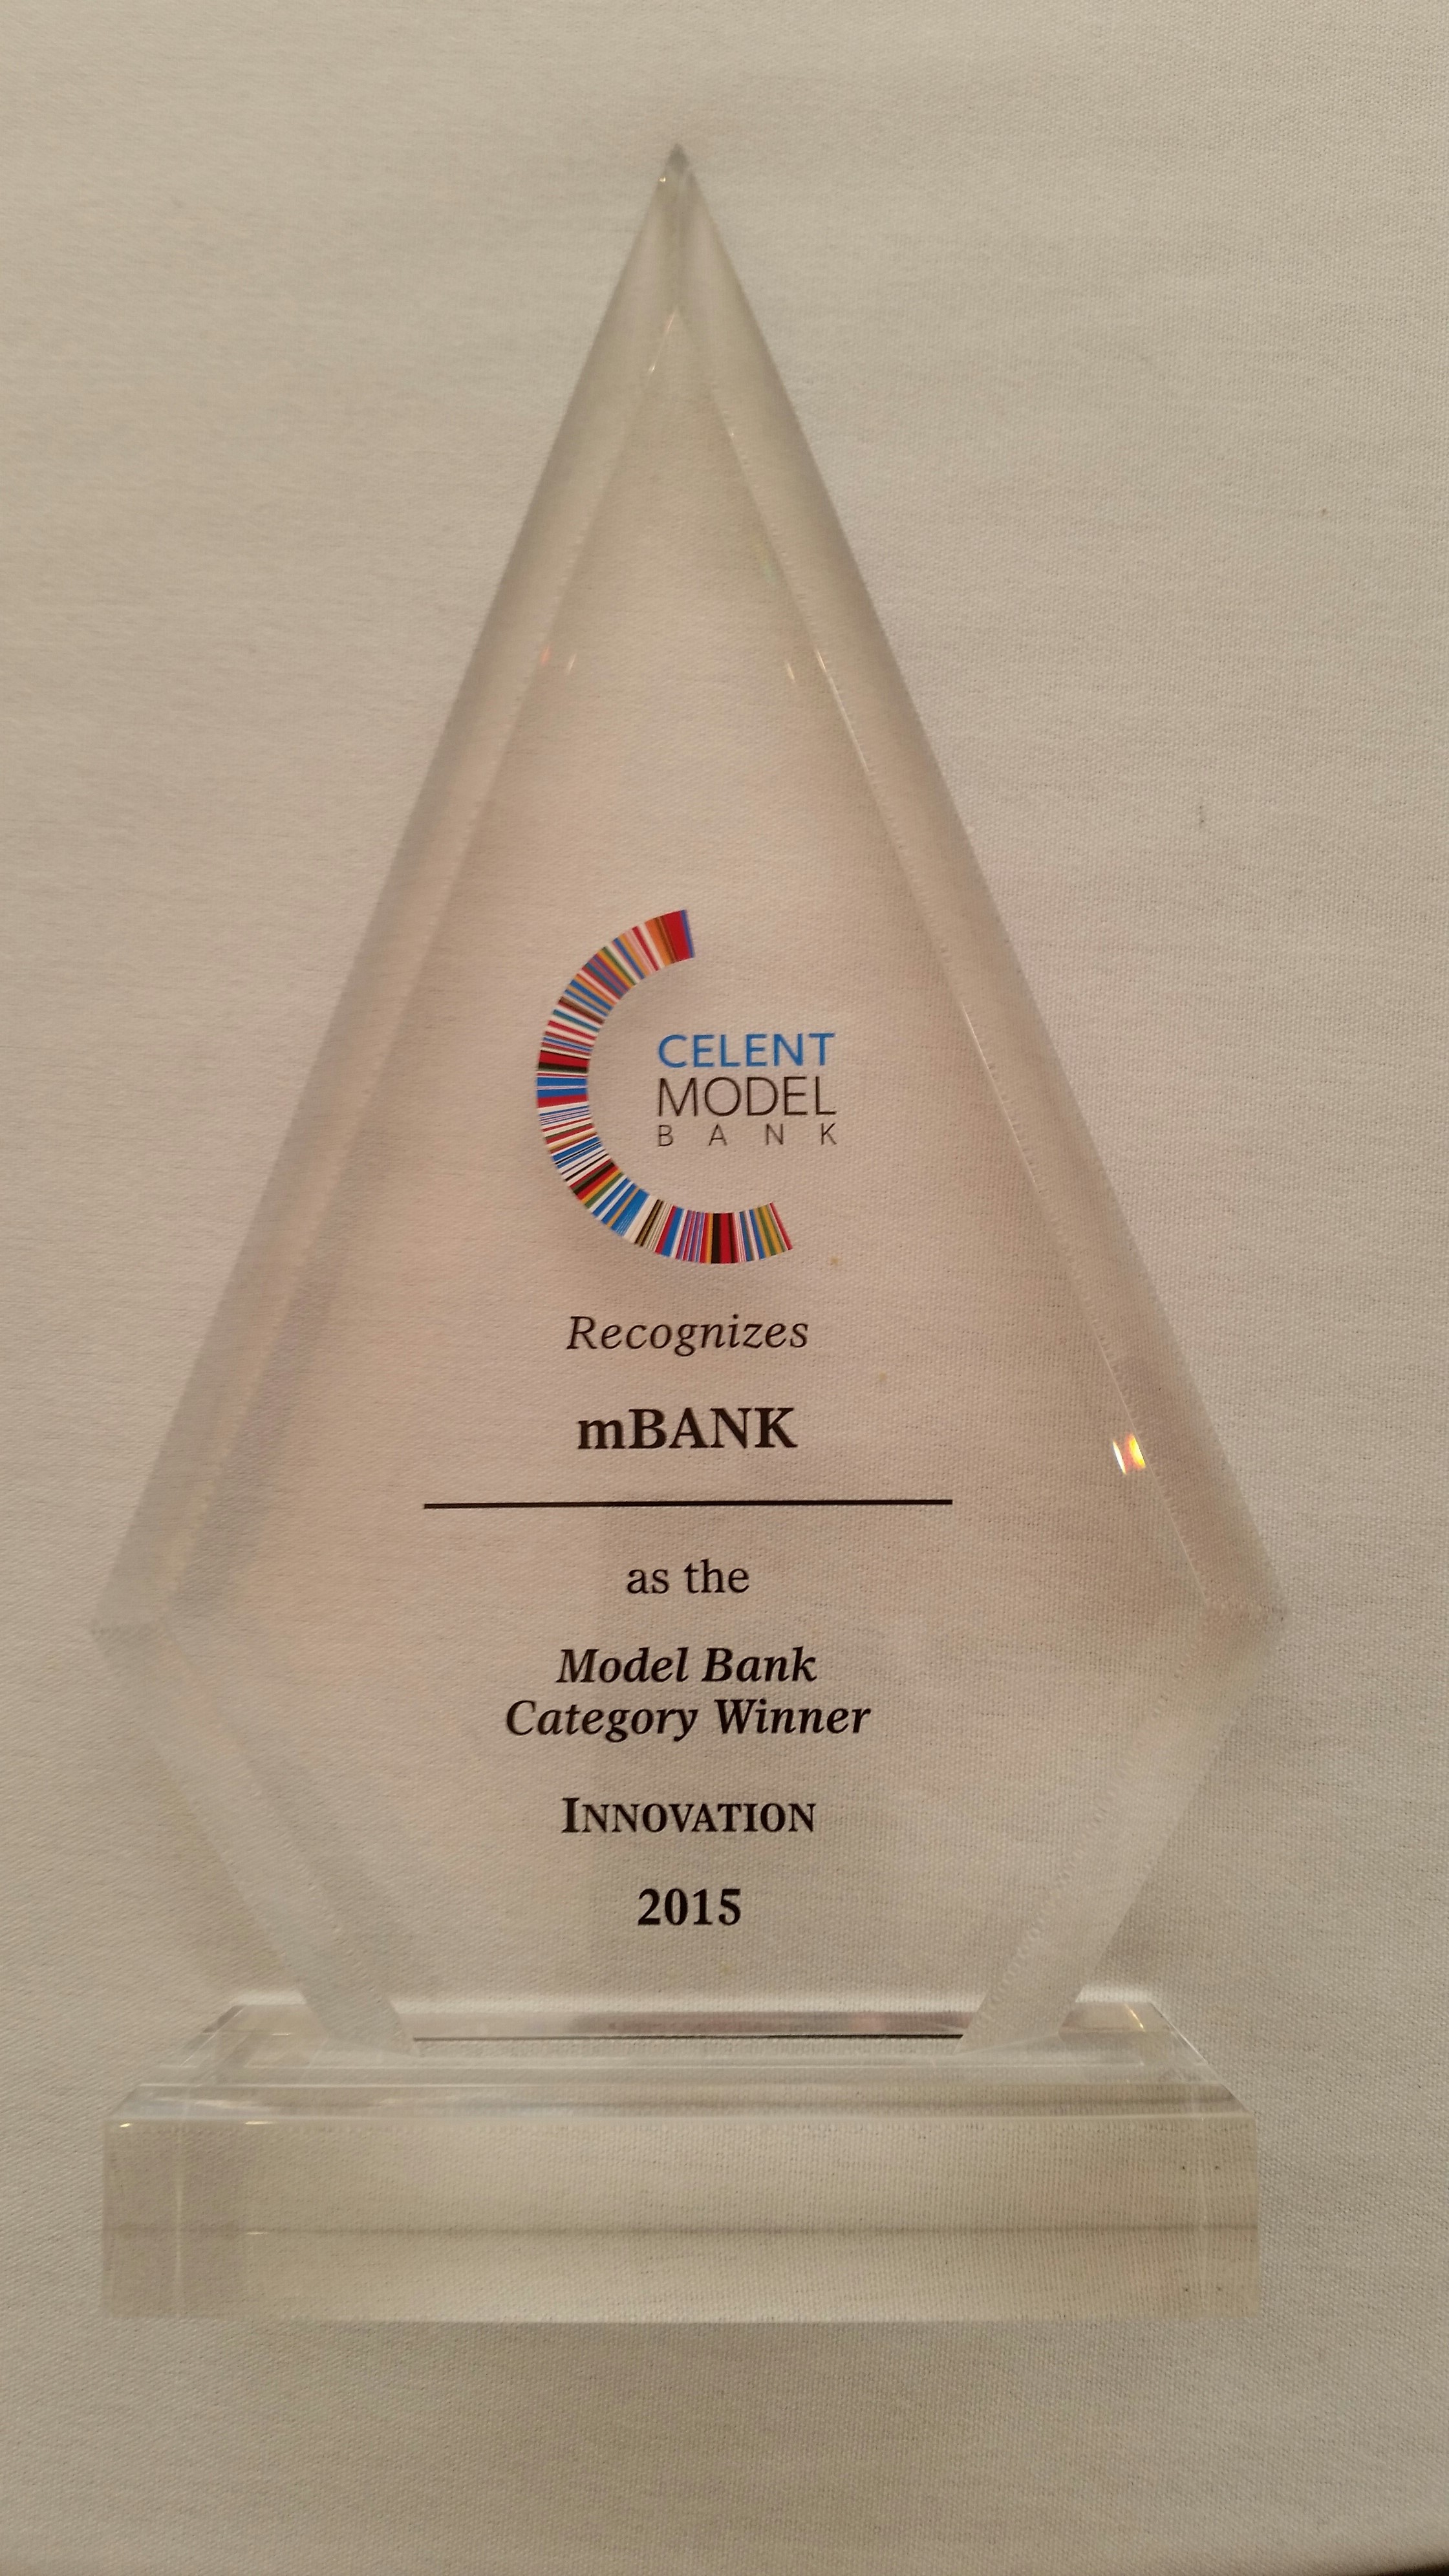 mBank ponownie najlepszy według Celent Research